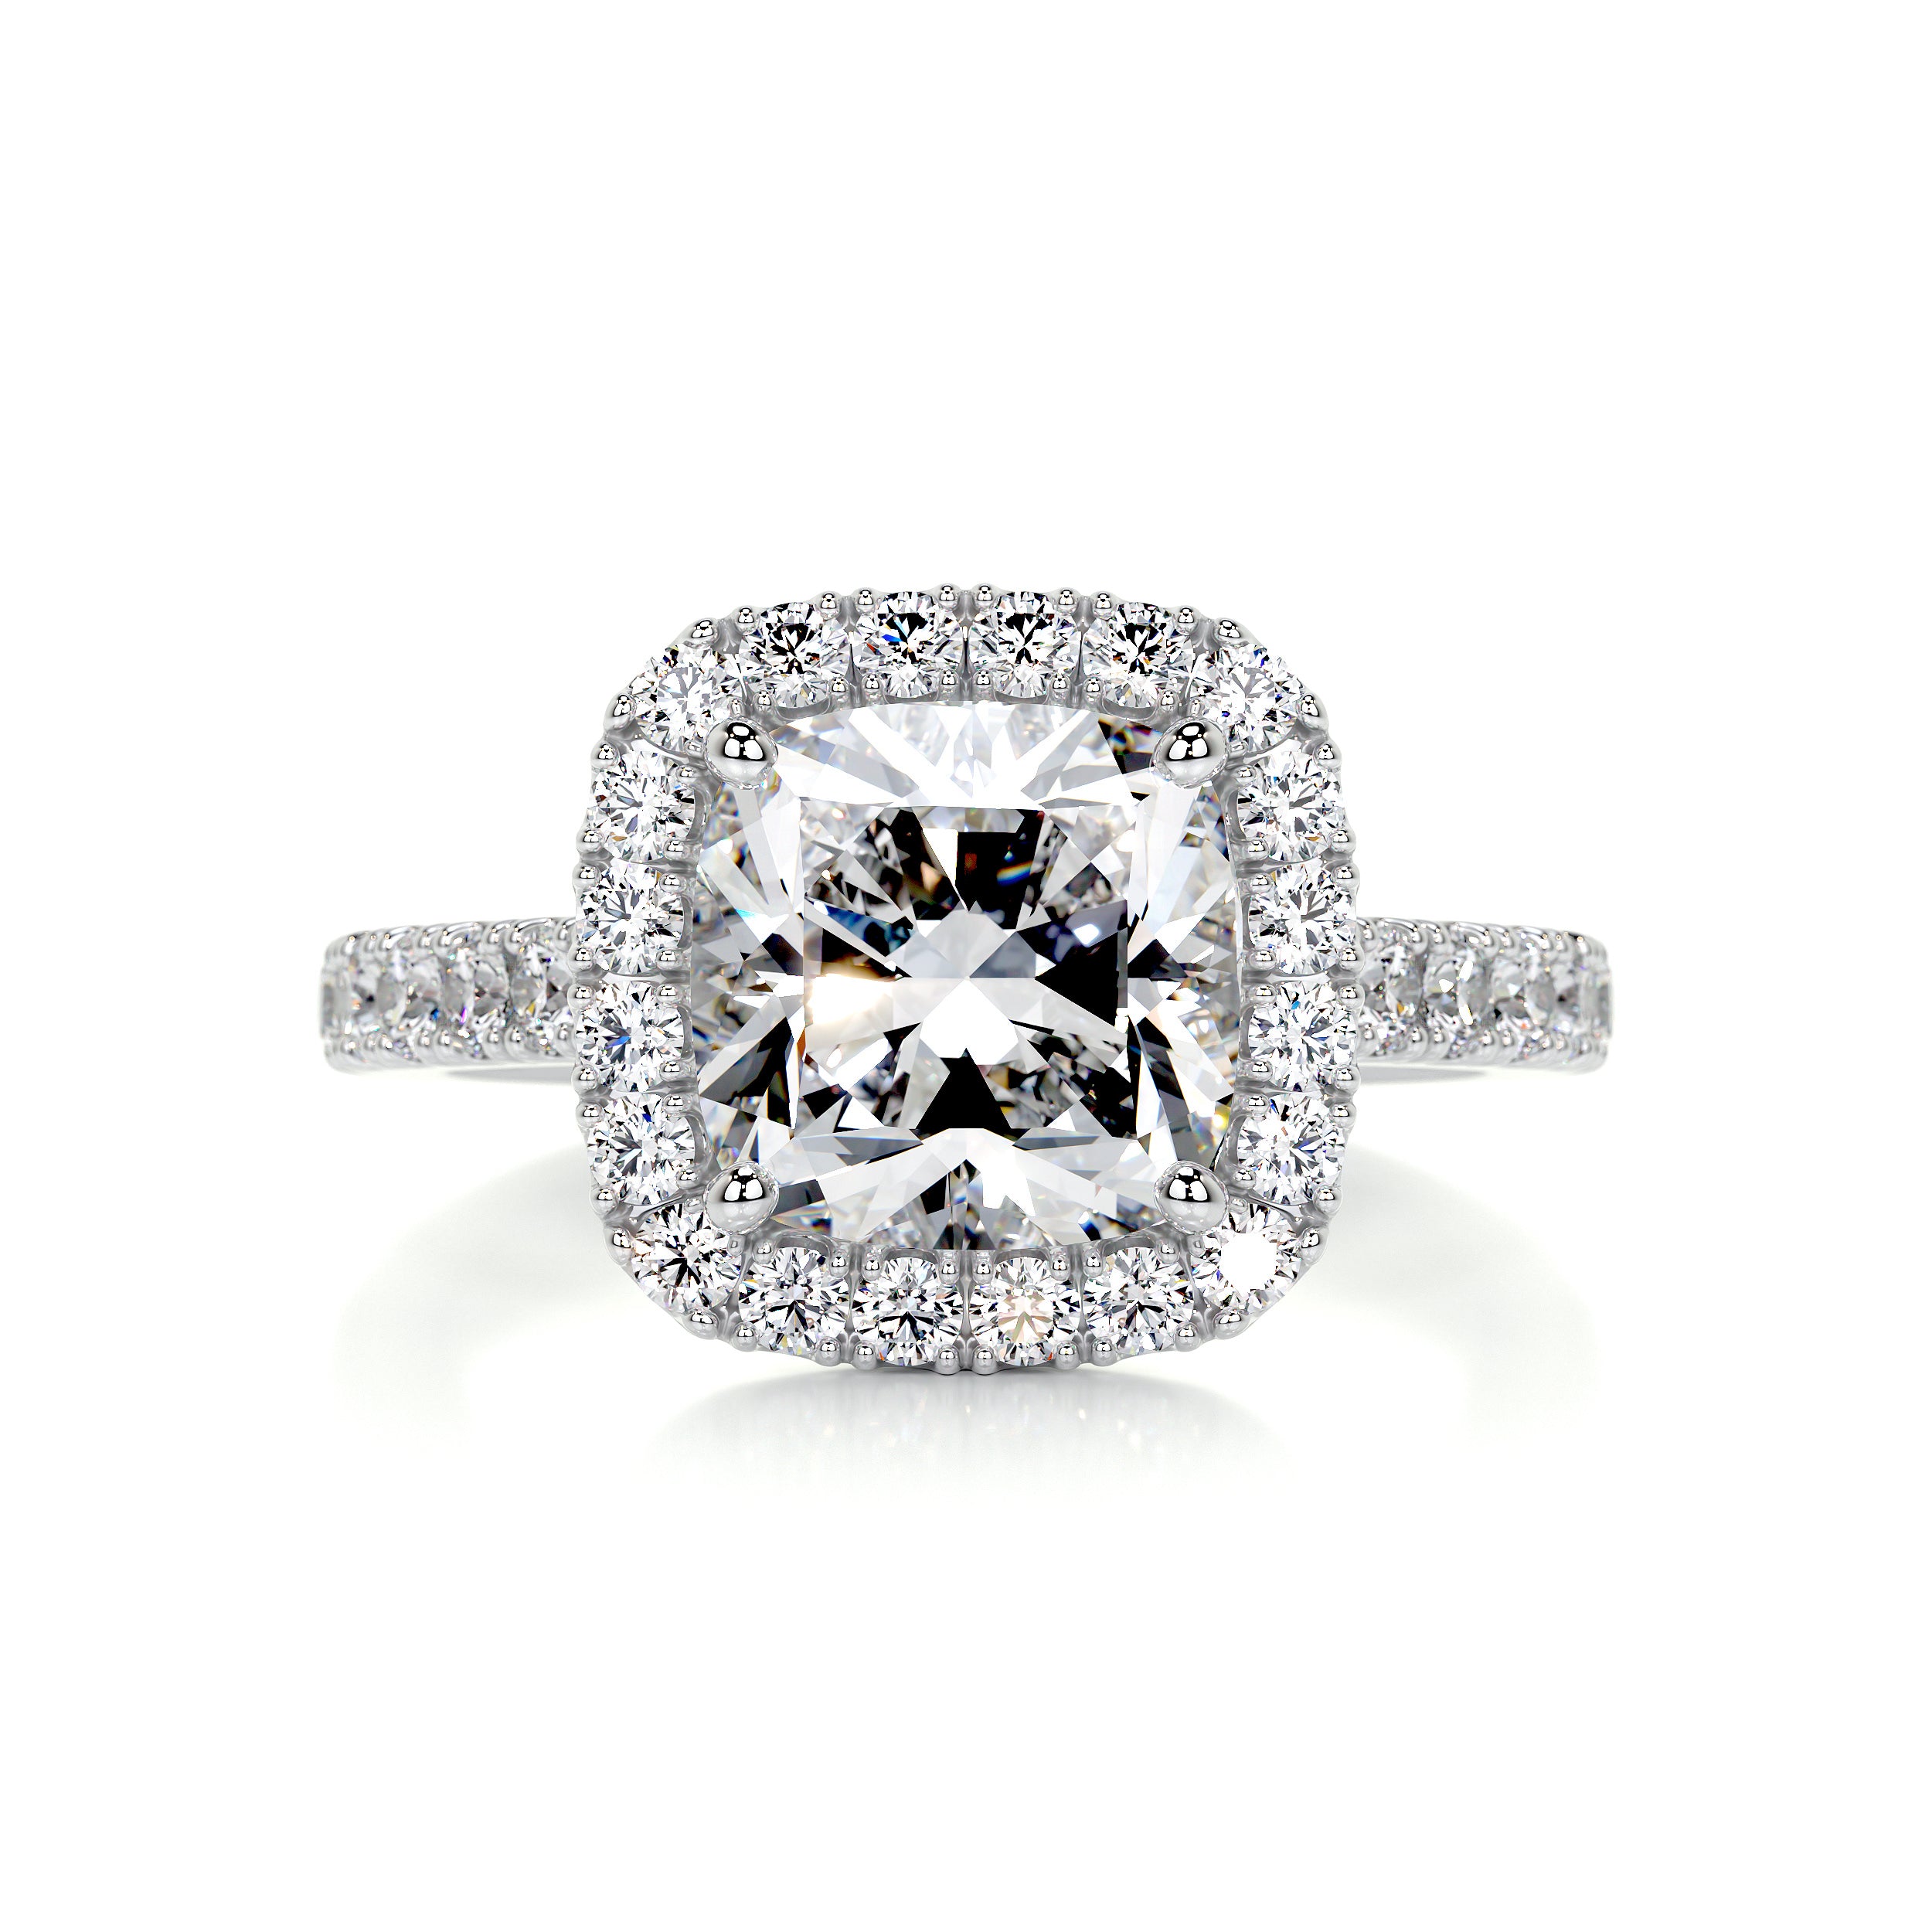 Celeste Diamond Engagement Ring   (3 Carat) -18K White Gold